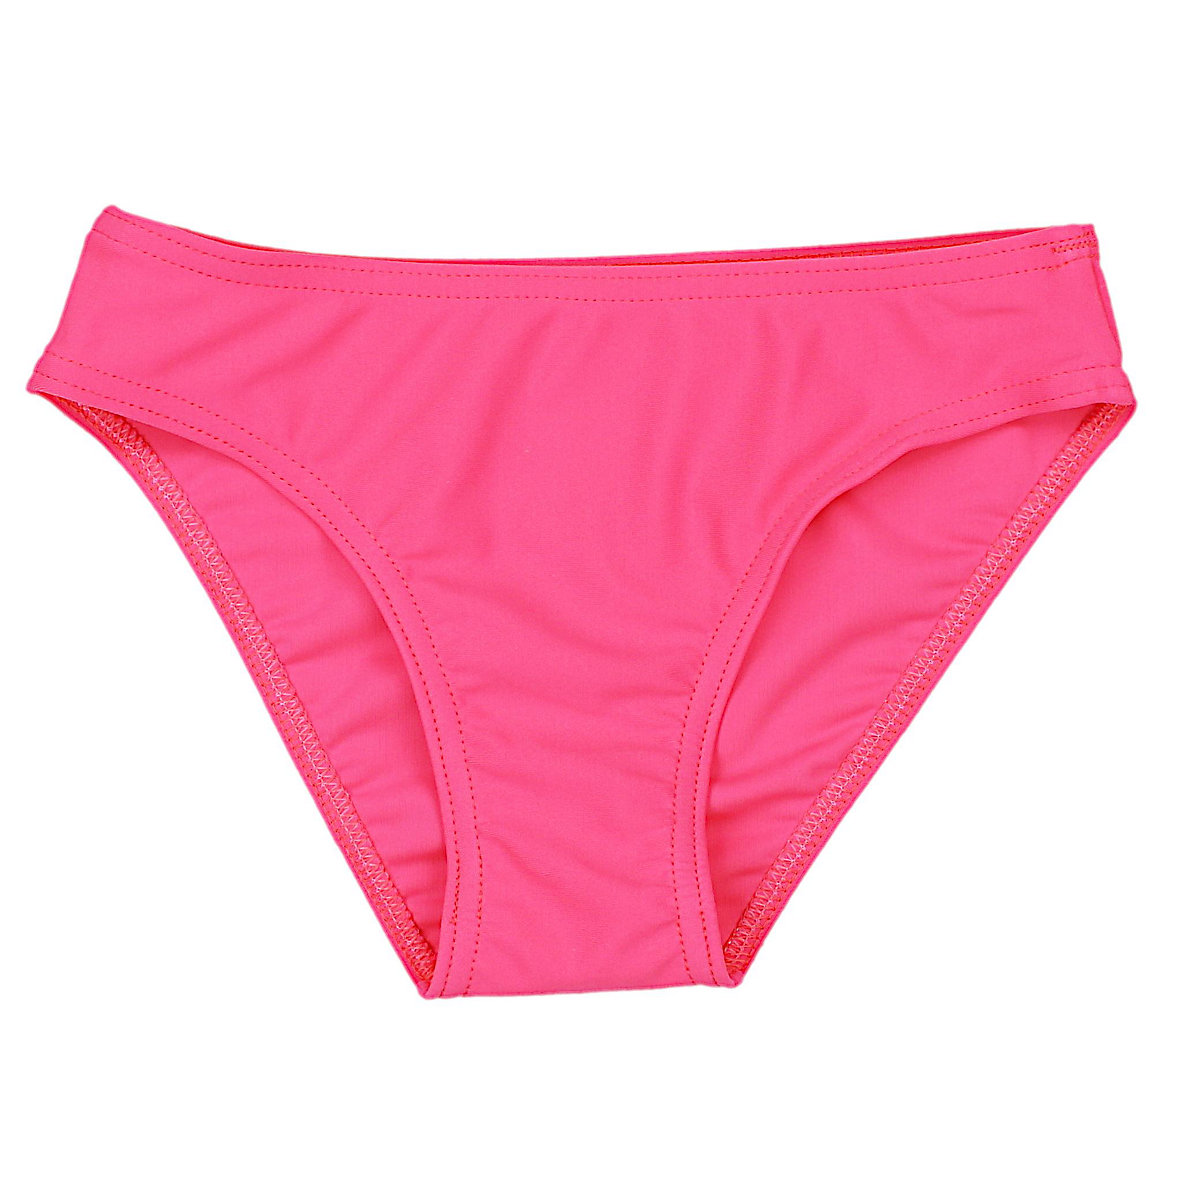 Aquarti Mädchen Bikini Set Zweiteilig Bikinislip Bustier für Mädchen rosa/pink YN11247